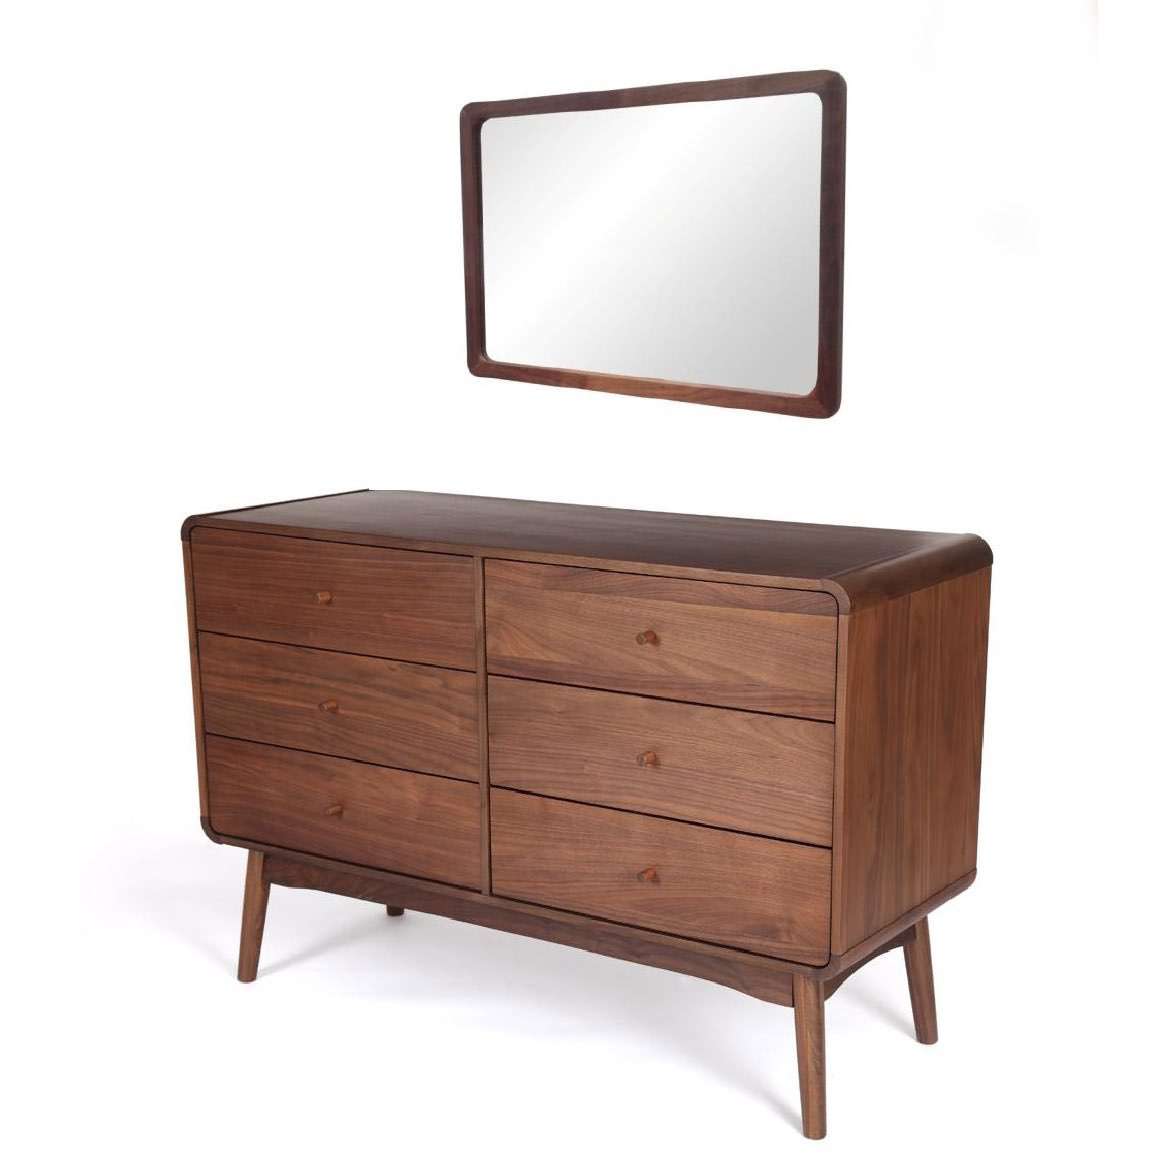 Dresser chest|Chest drawers|Walnut cabinet